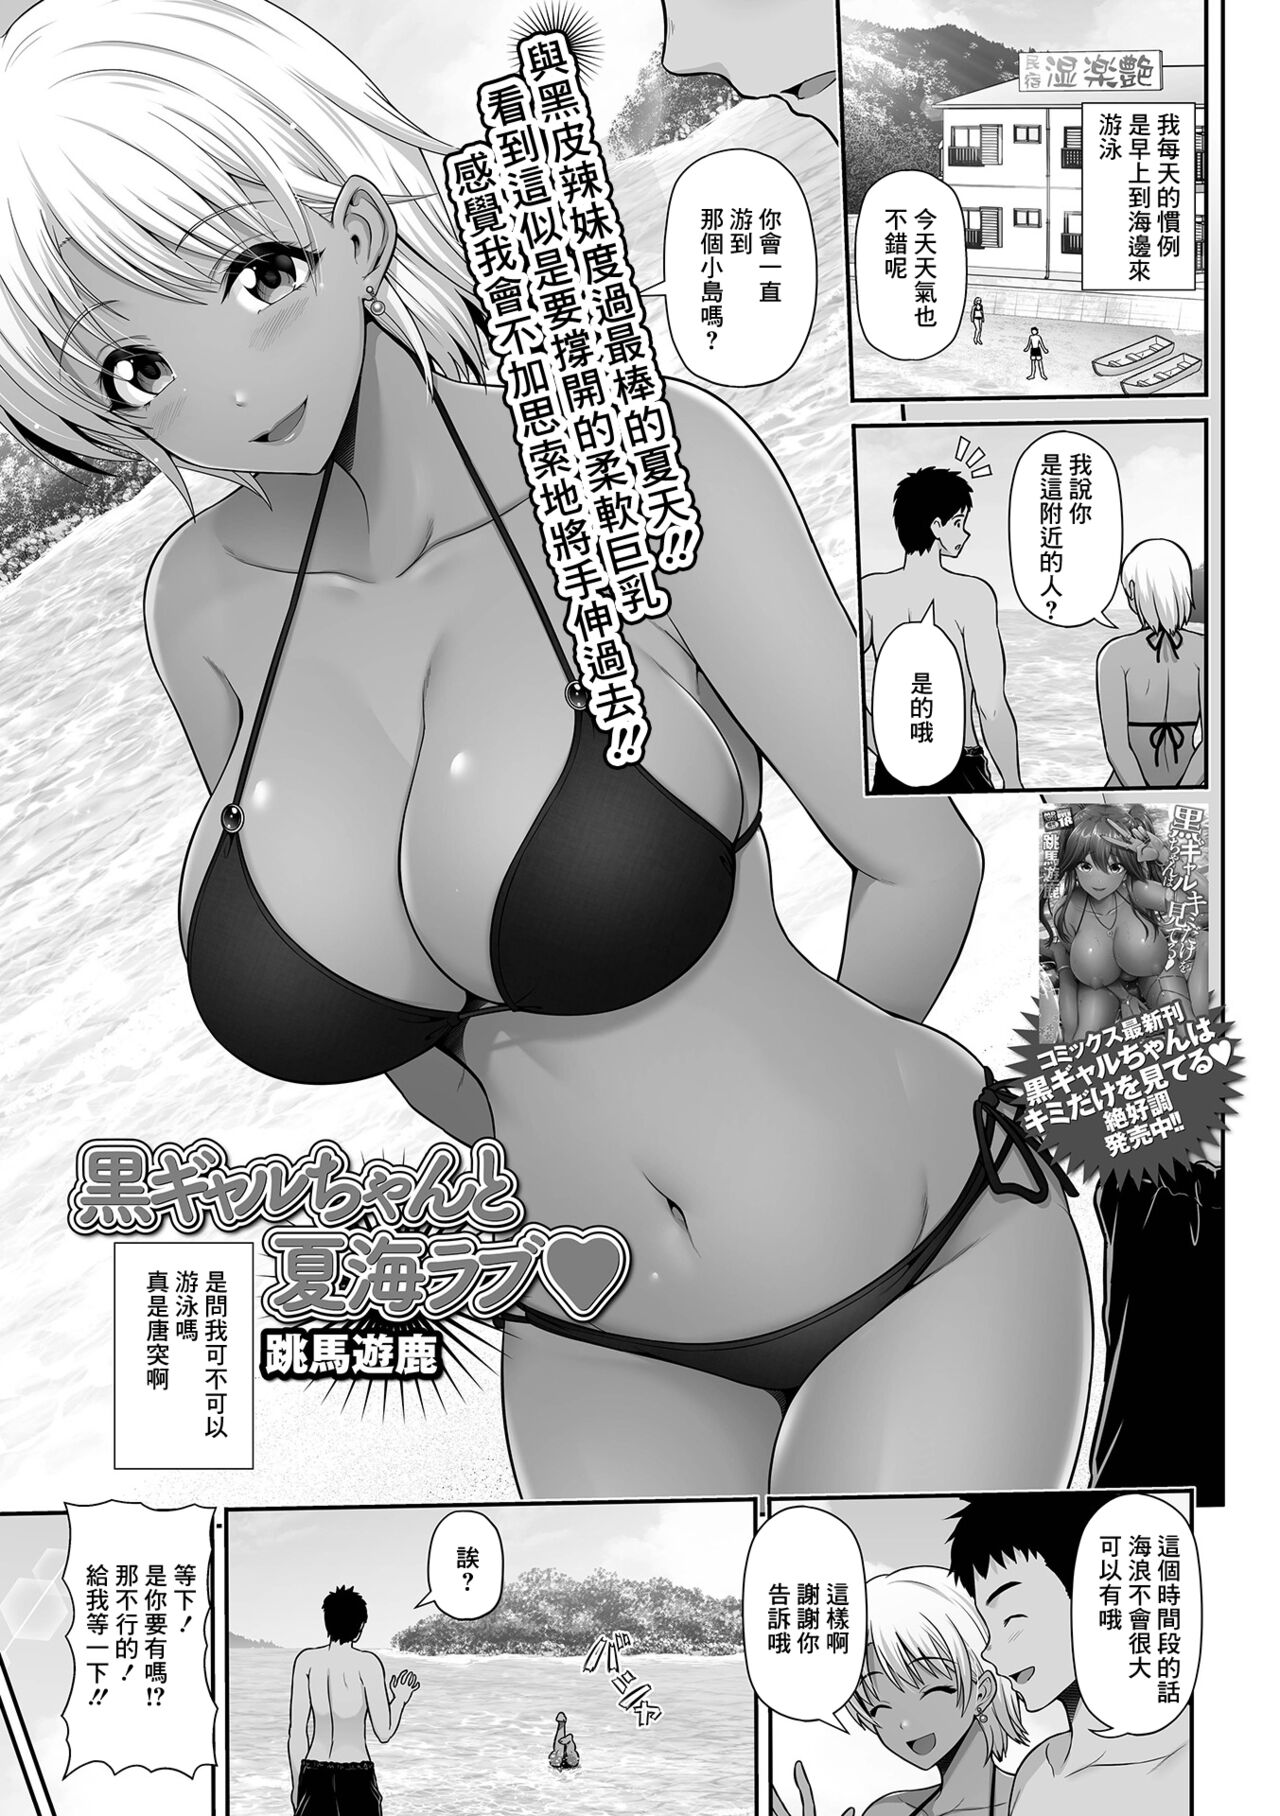 [跳馬遊鹿] 黒ギャルちゃんと夏海ラブ♥ (コミック刺激的SQUIRT!! Vol.25) - 情色卡漫 -